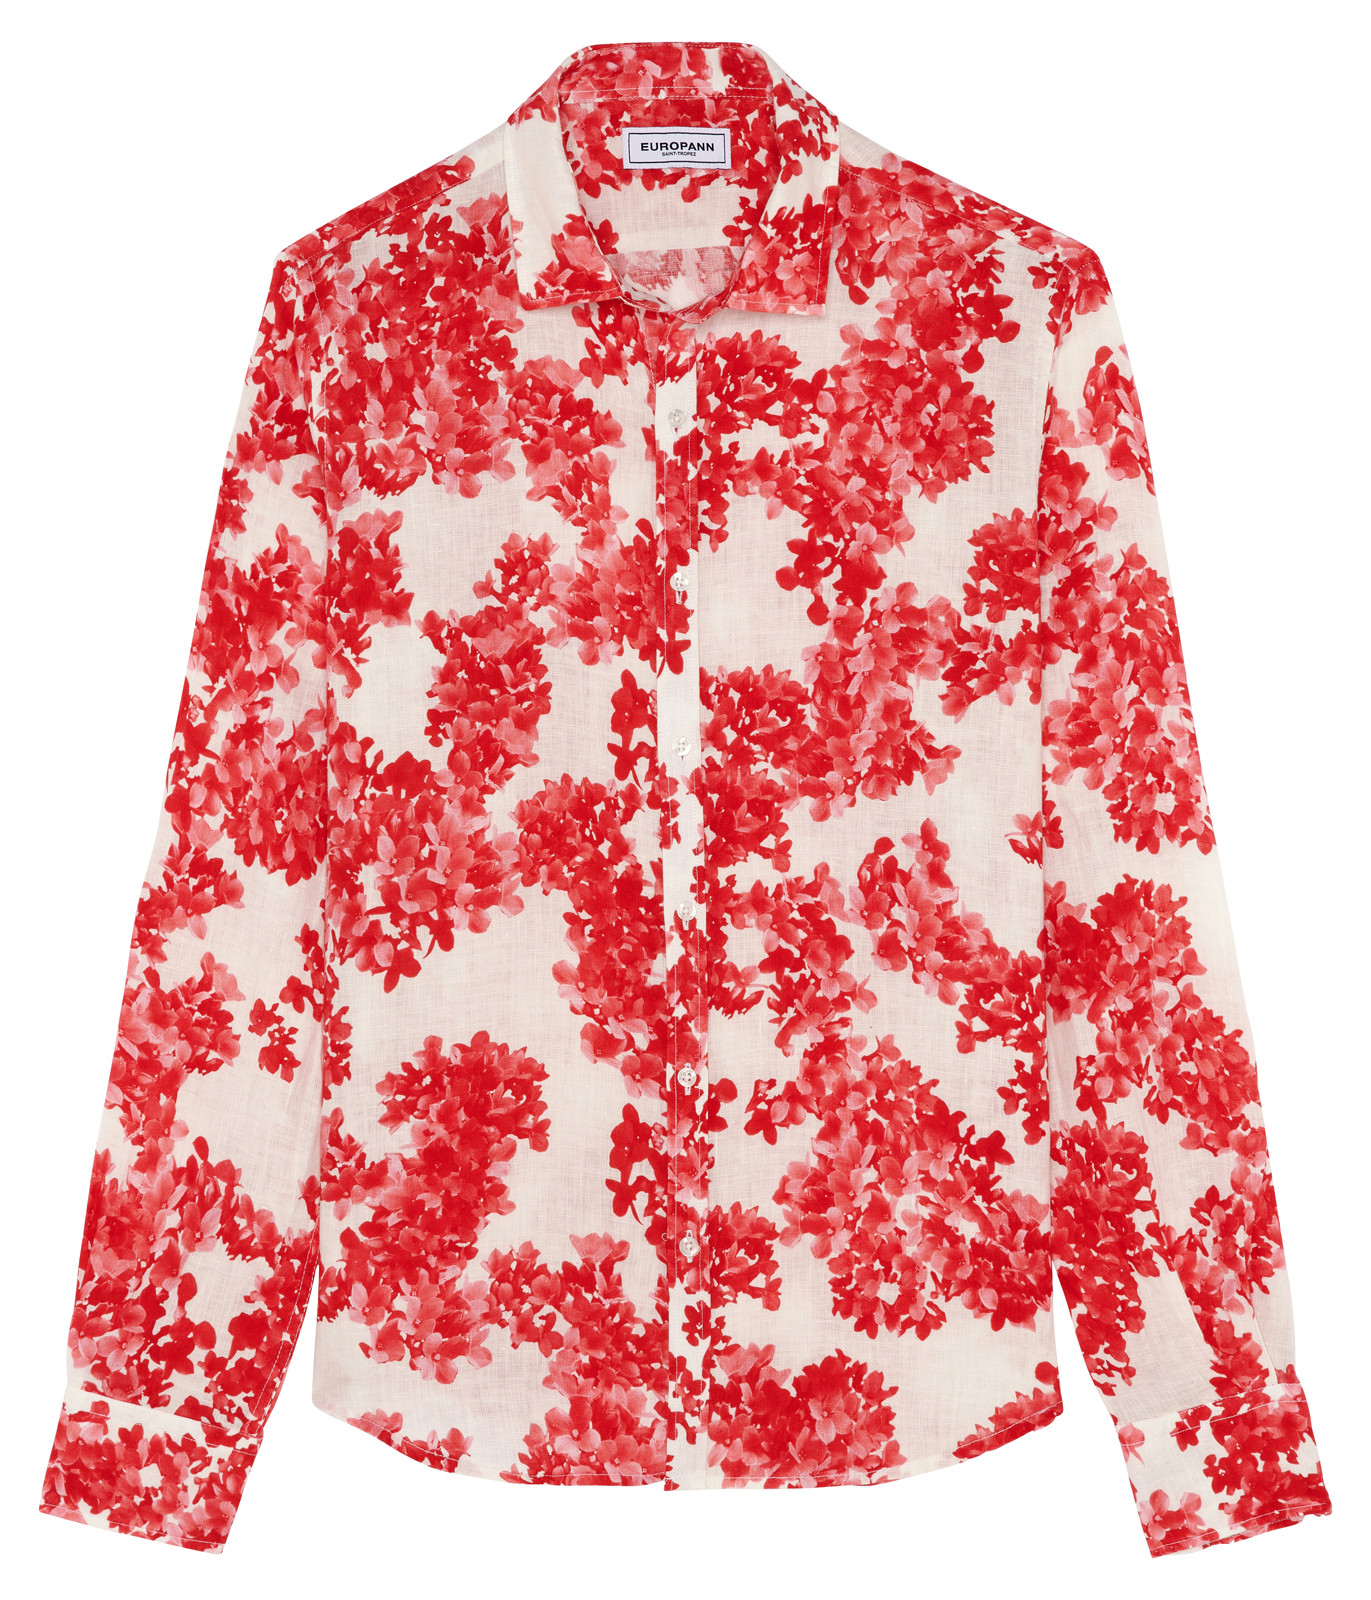 AMALFI - Coral Flower Print Linen Shirt